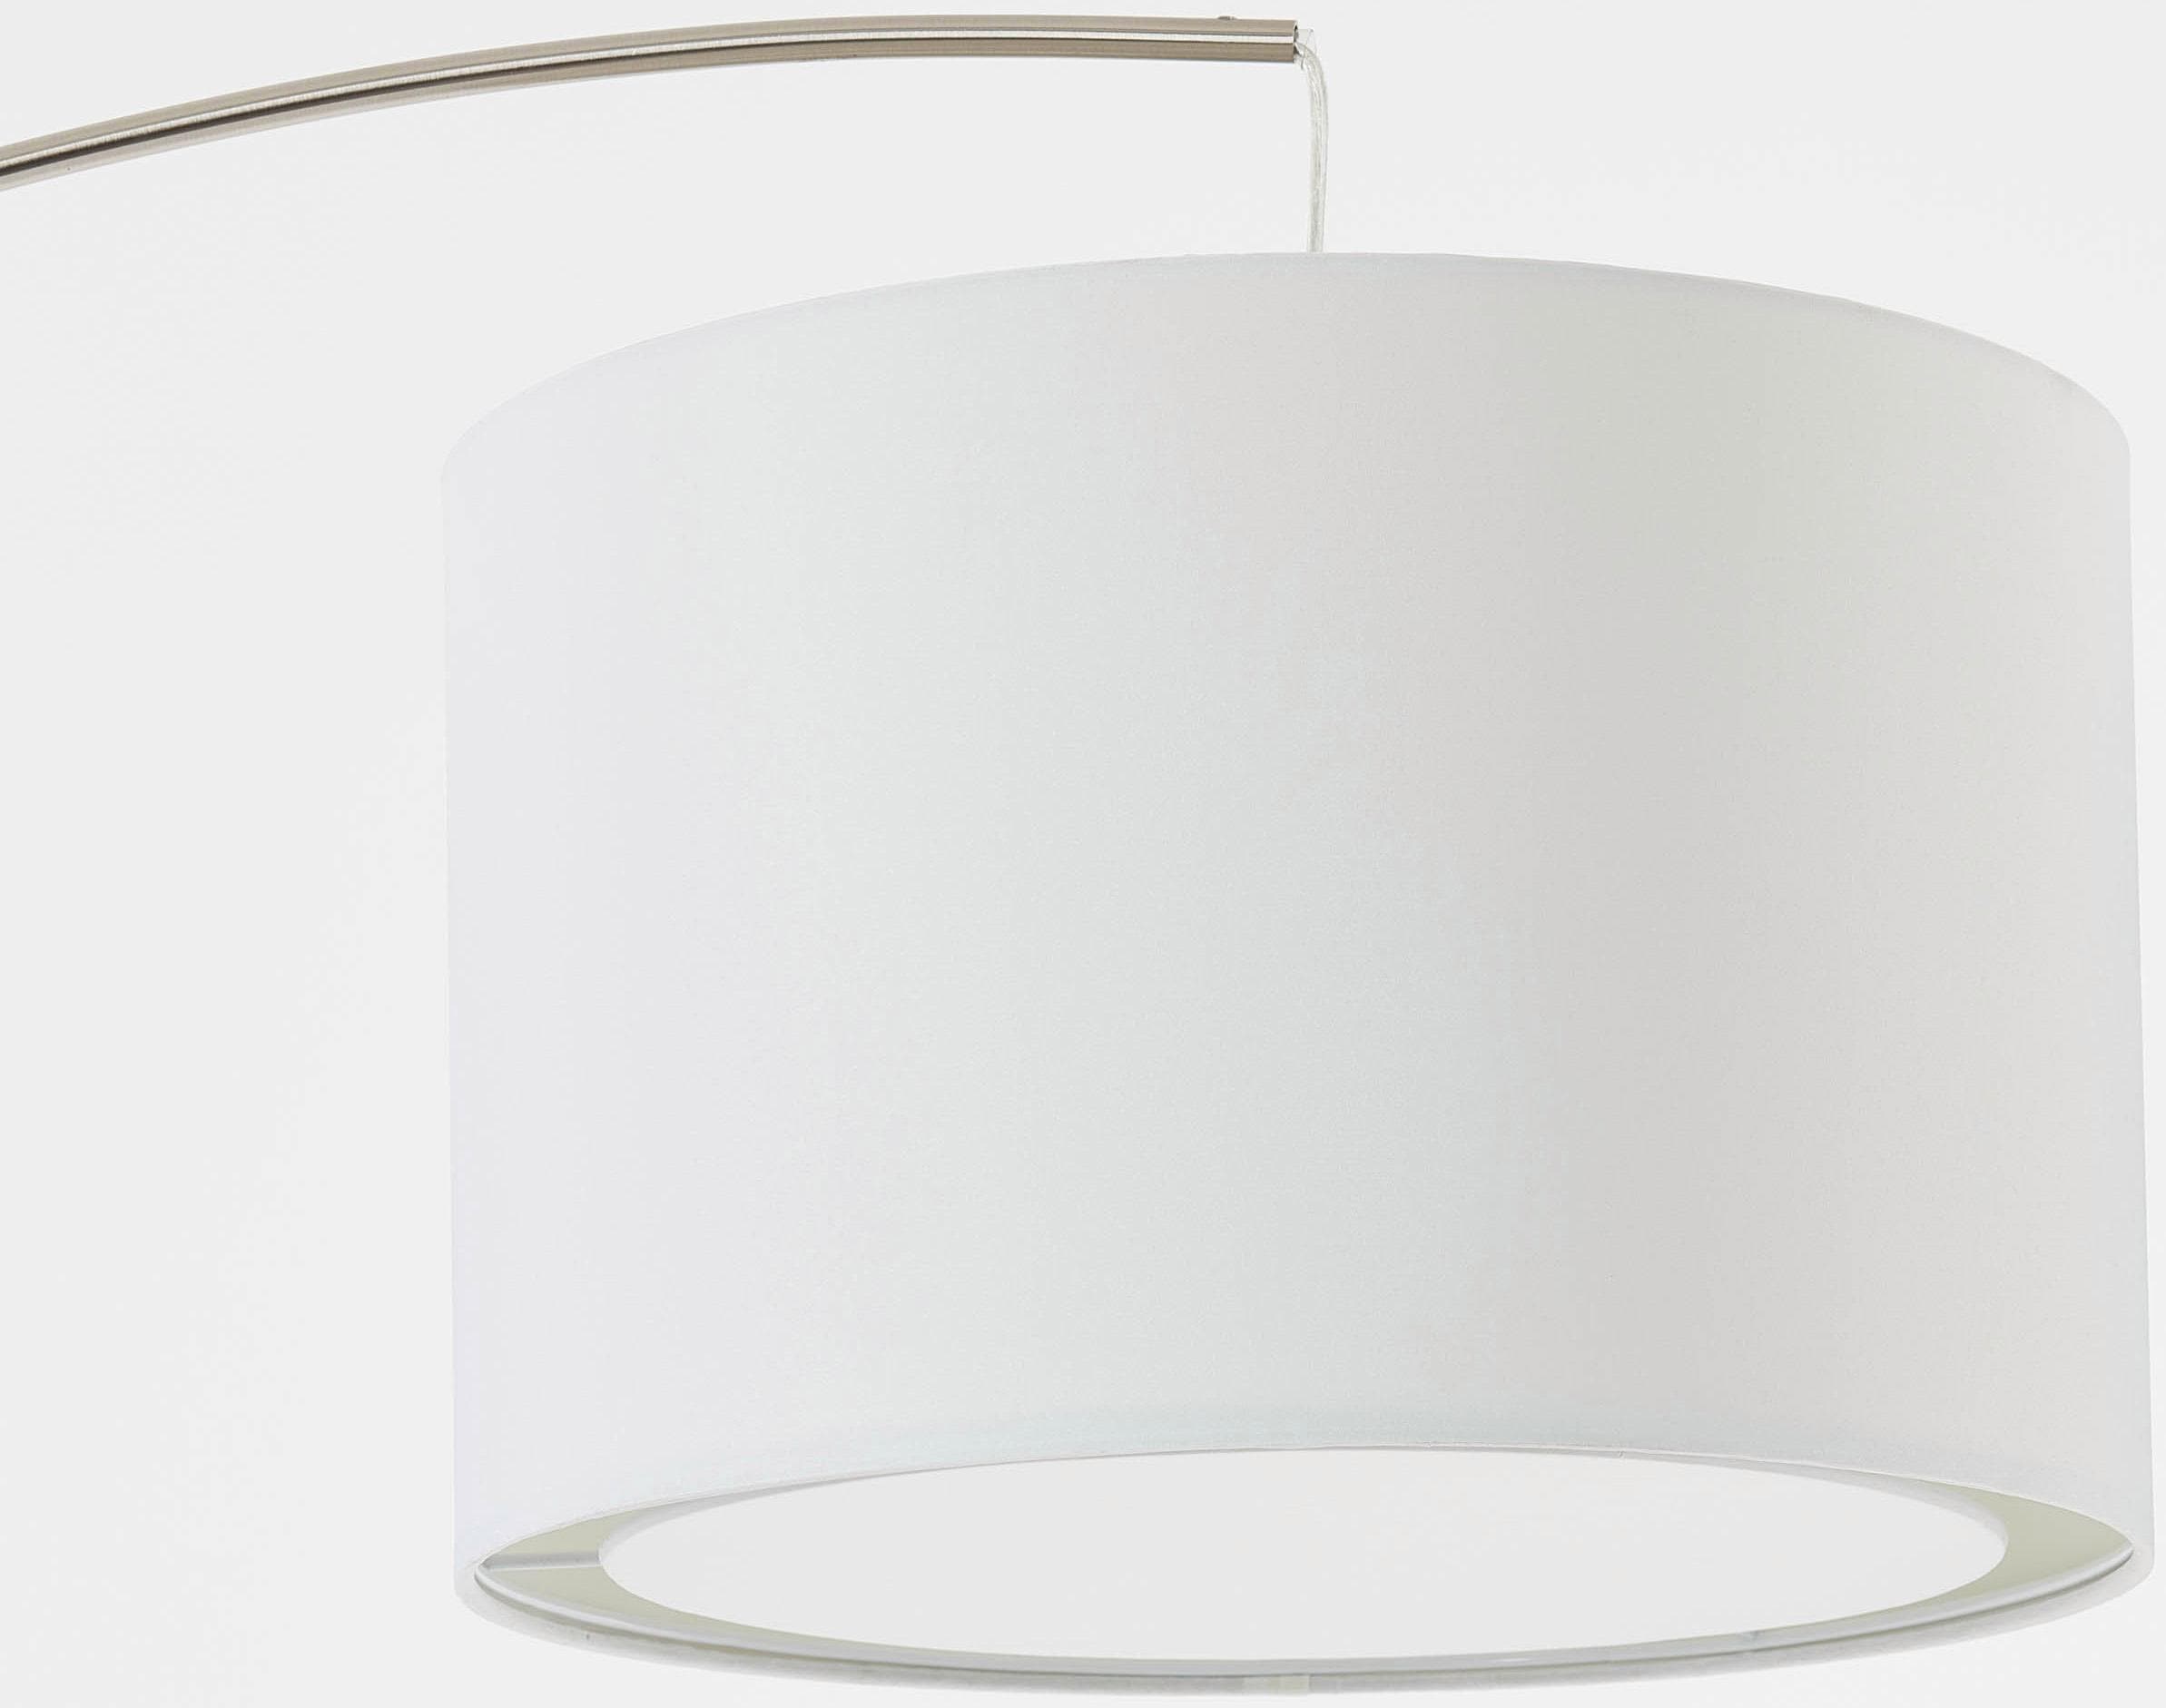 Brilliant Bogenlampe »Clarie«, 1 flammig-flammig, 1,8m Höhe, E27 max. 60W,  eisen/weiß, Stoffschirm, Metall/Textil online kaufen